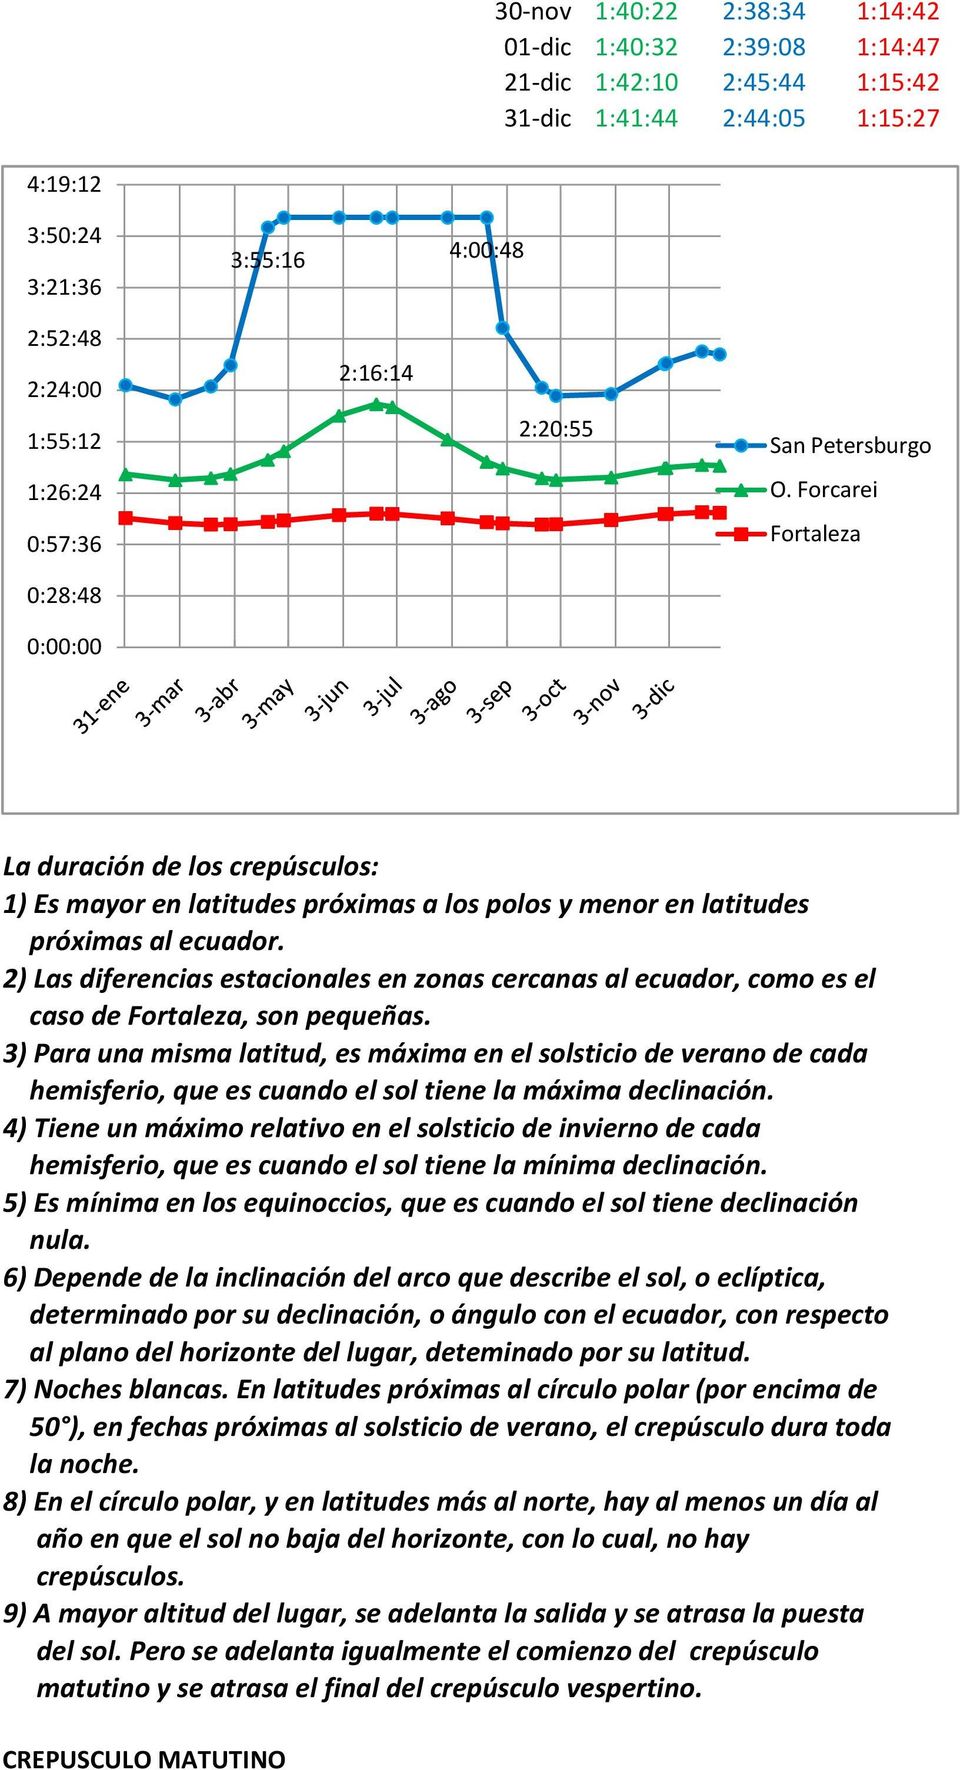 2) Las diferencias estacionales en zonas cercanas al ecuador, como es el caso de Fortaleza, son pequeñas.